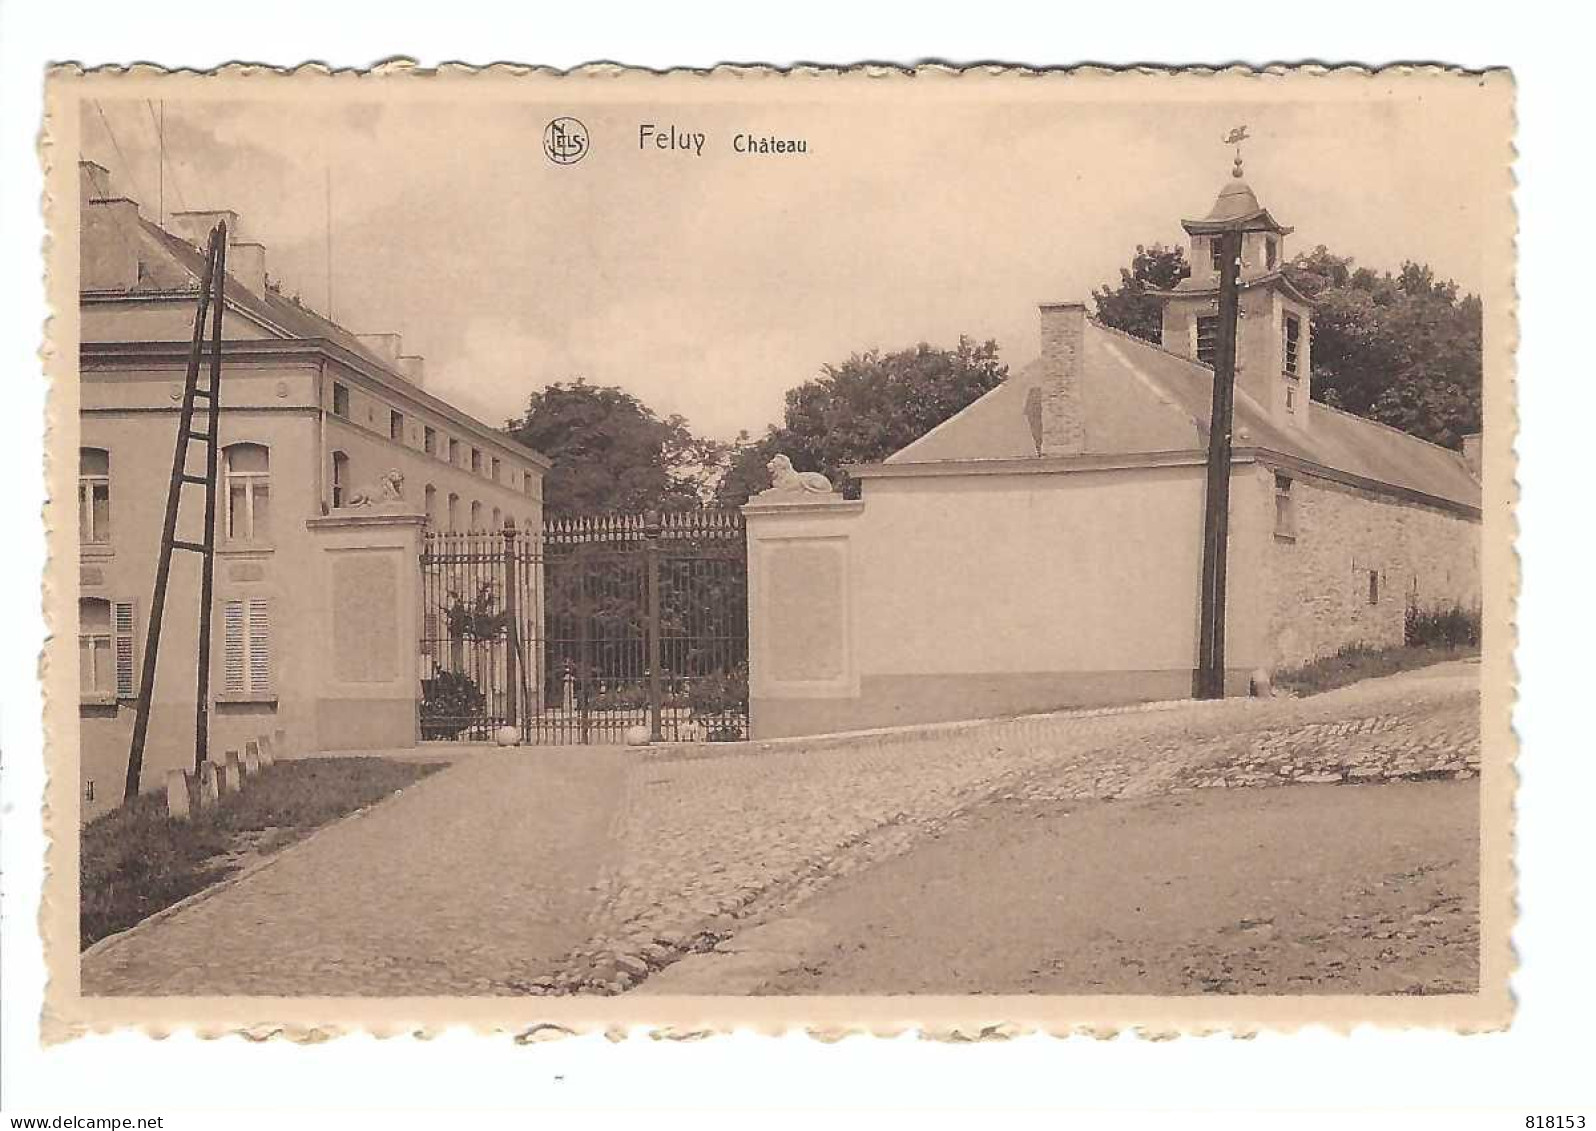 Feluy   Château - Seneffe